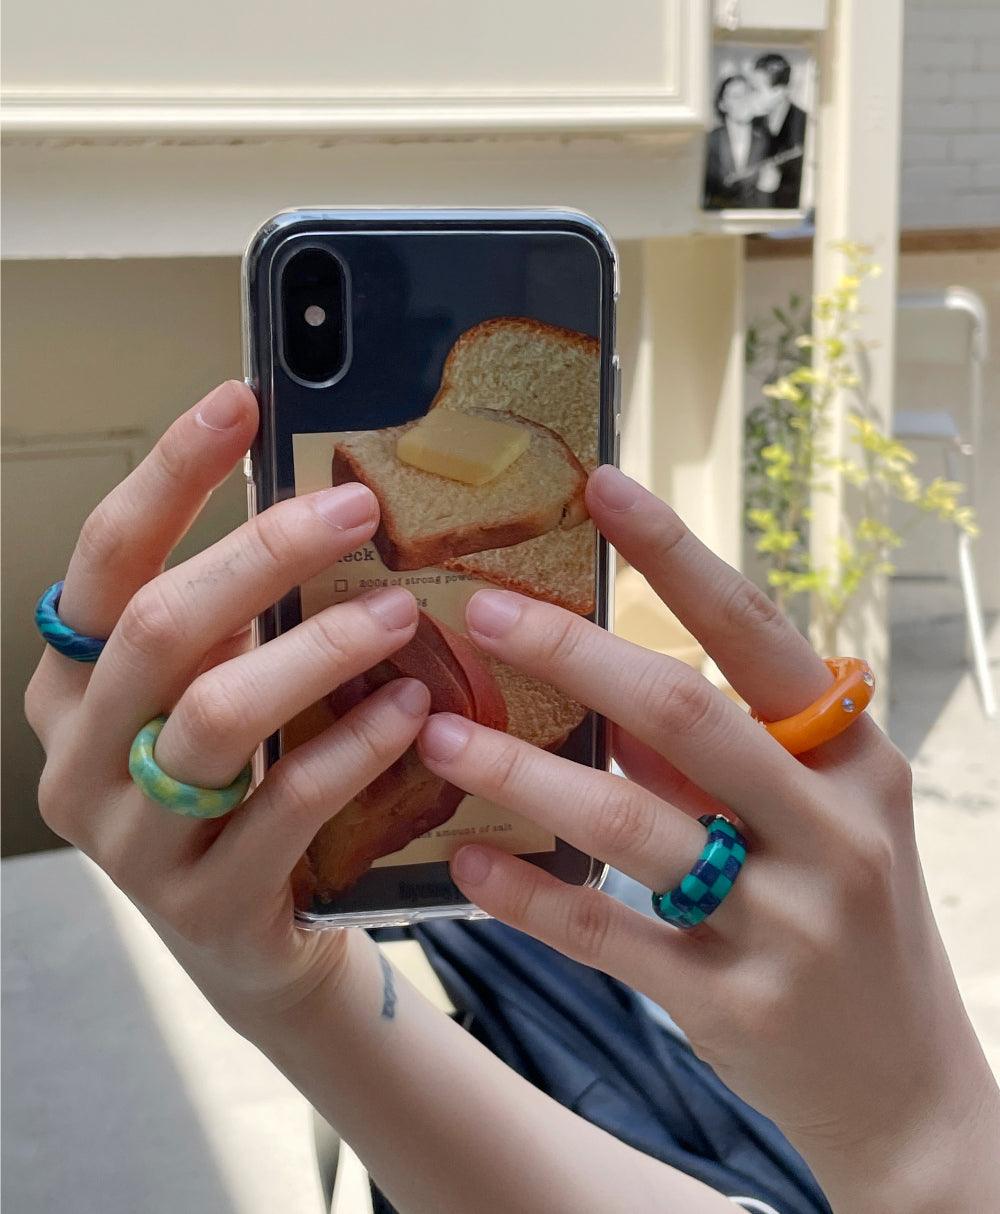 Byemympie Butter Bread Hardjelly Phone Case 手機保護殻 - SOUL SIMPLE HK